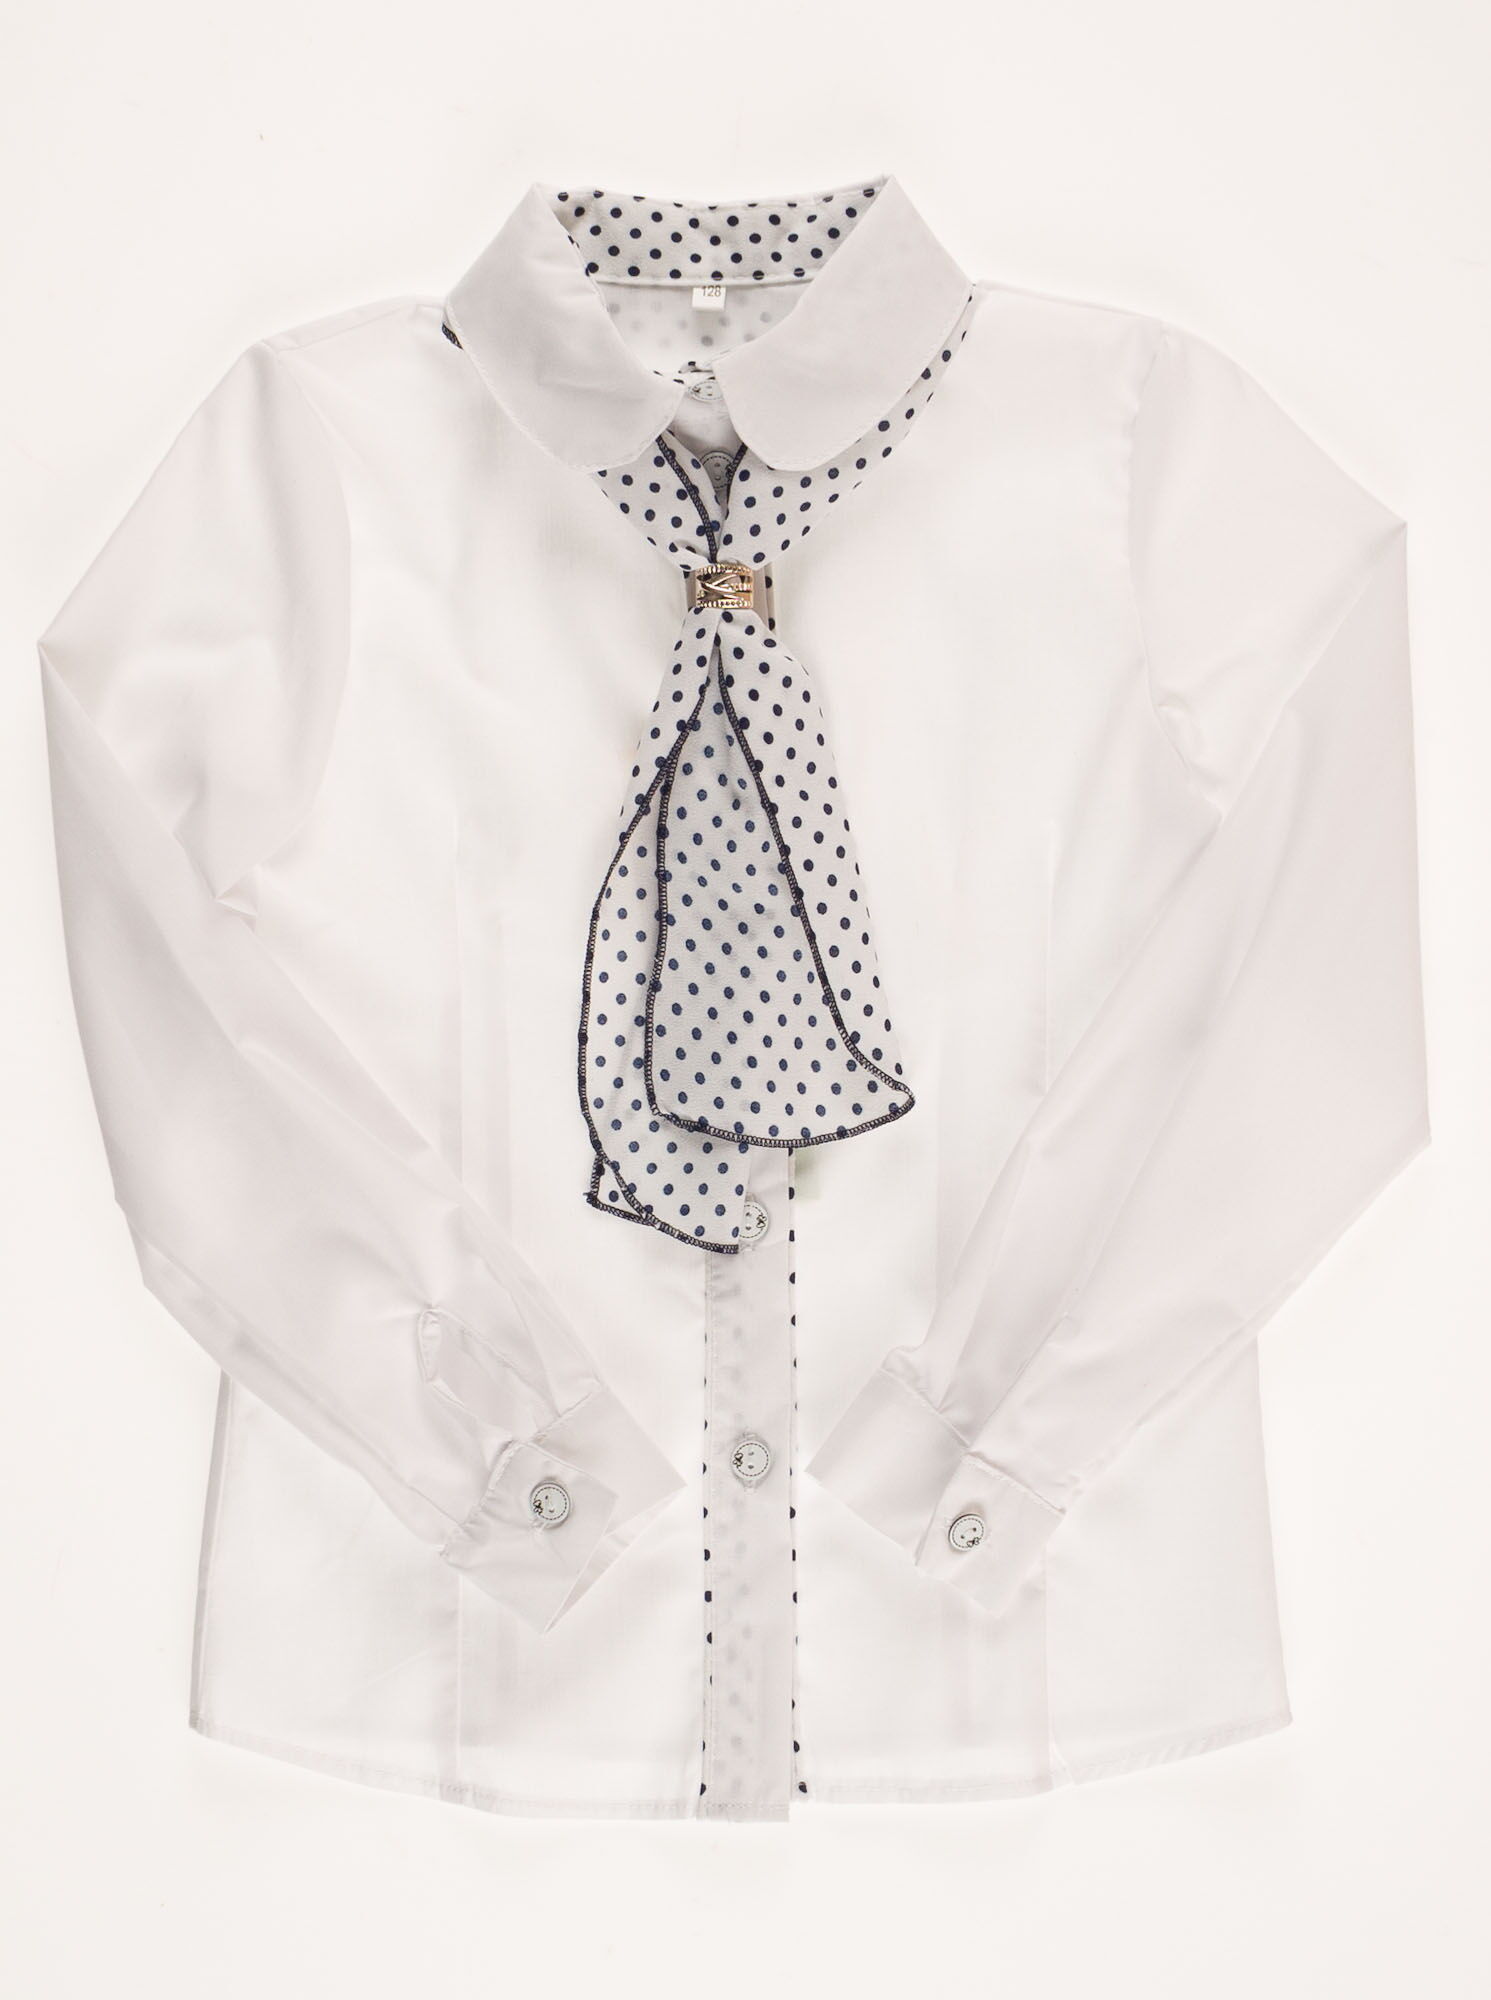 Блузка школьная сo съемным галстуком белая  03294 - фото